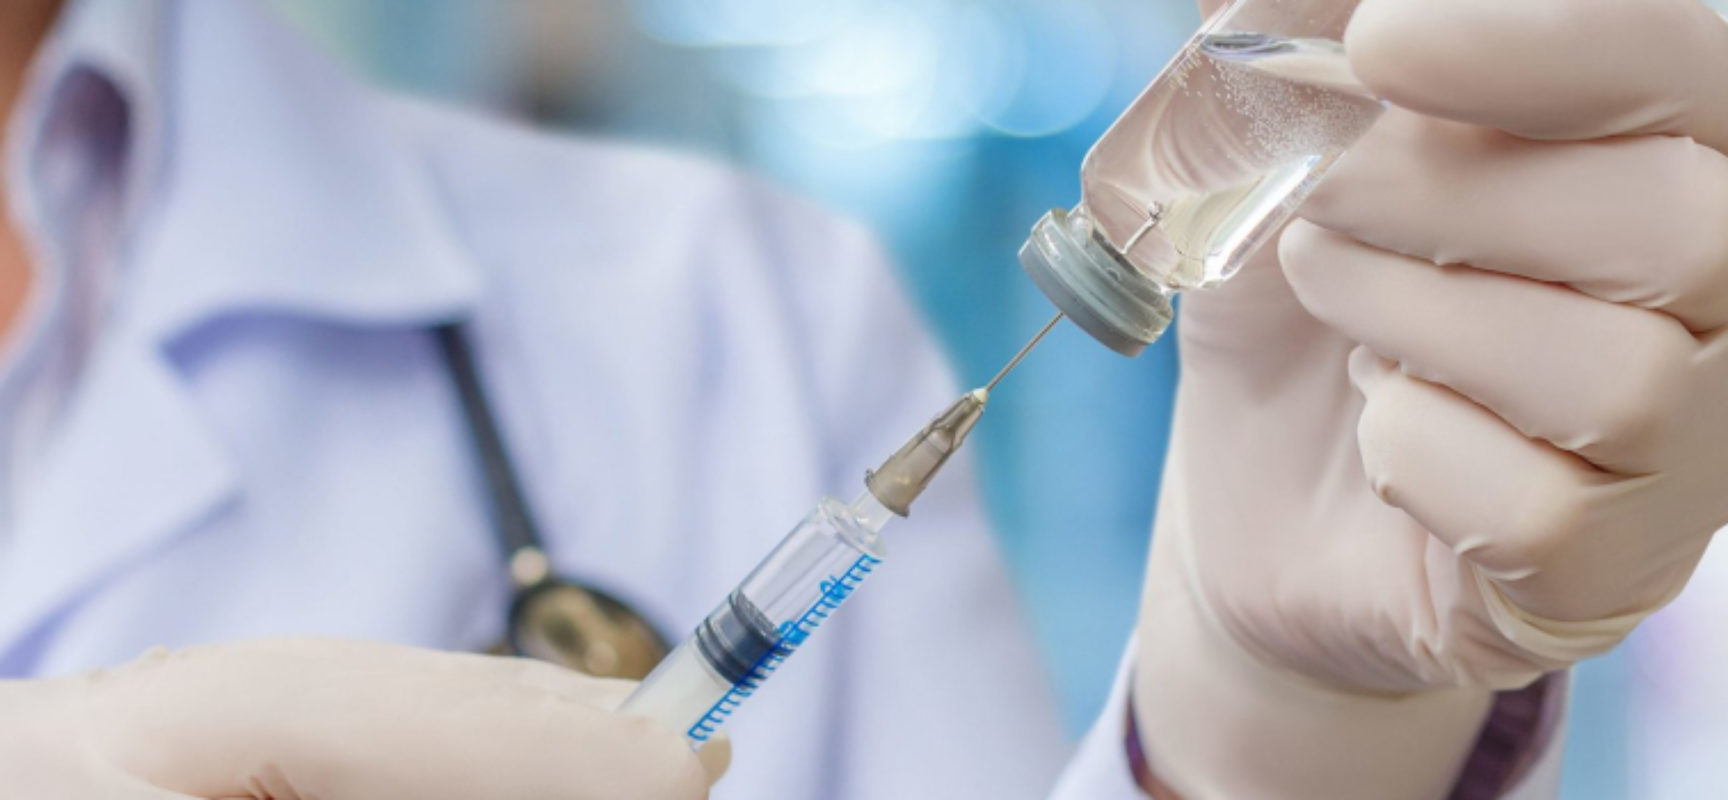 Regione Puglia: Commissione approva proposta su obbligo vaccino anti Covid  per operatori sanitari